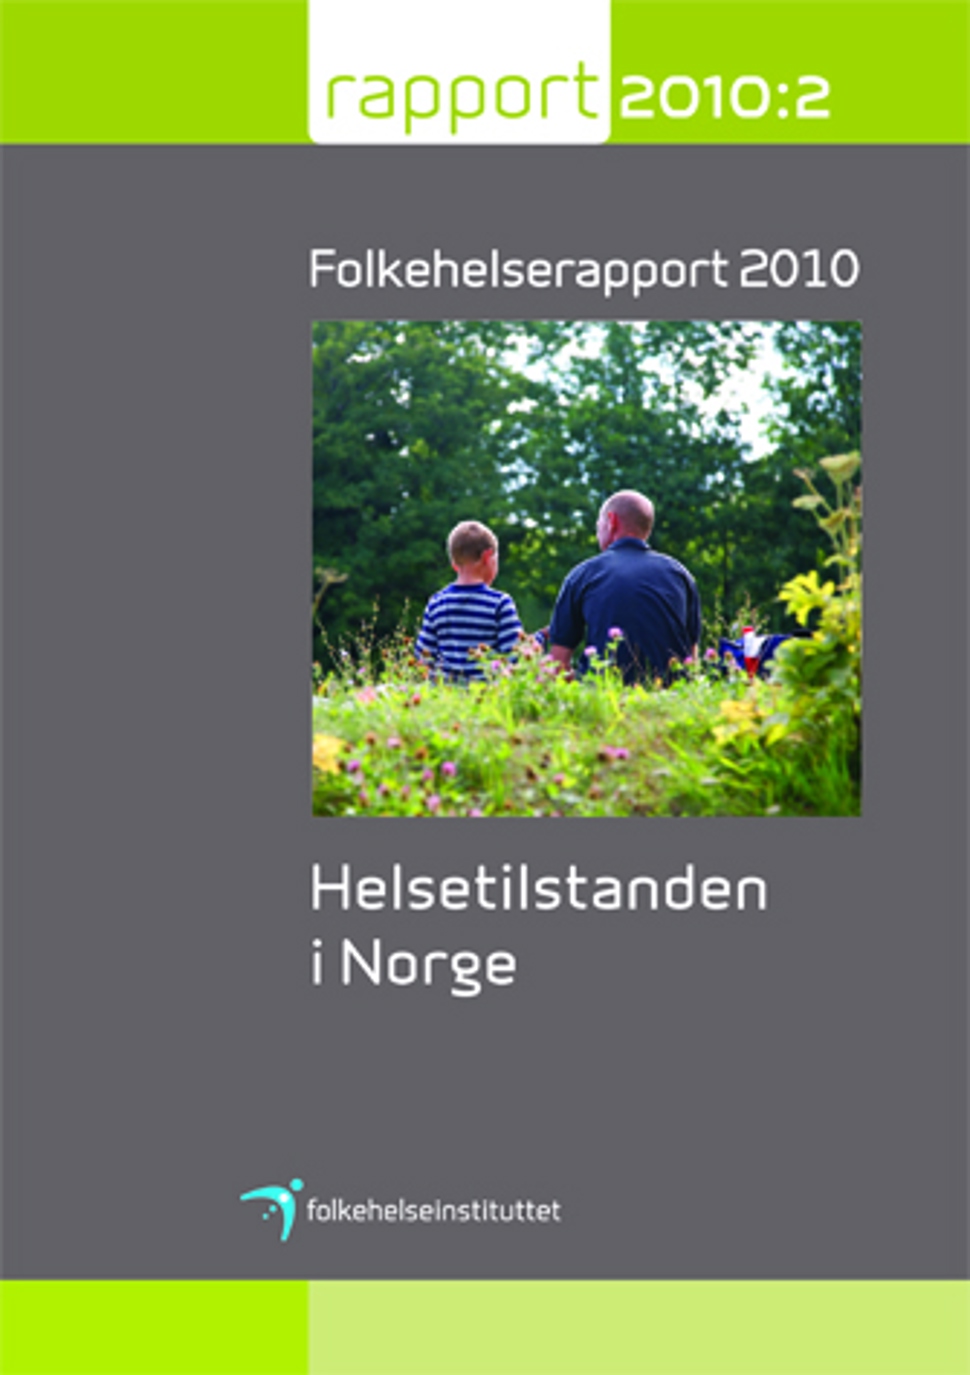 Folkehelserapporten 2010 - Helsetilstanden i Norge.jpg